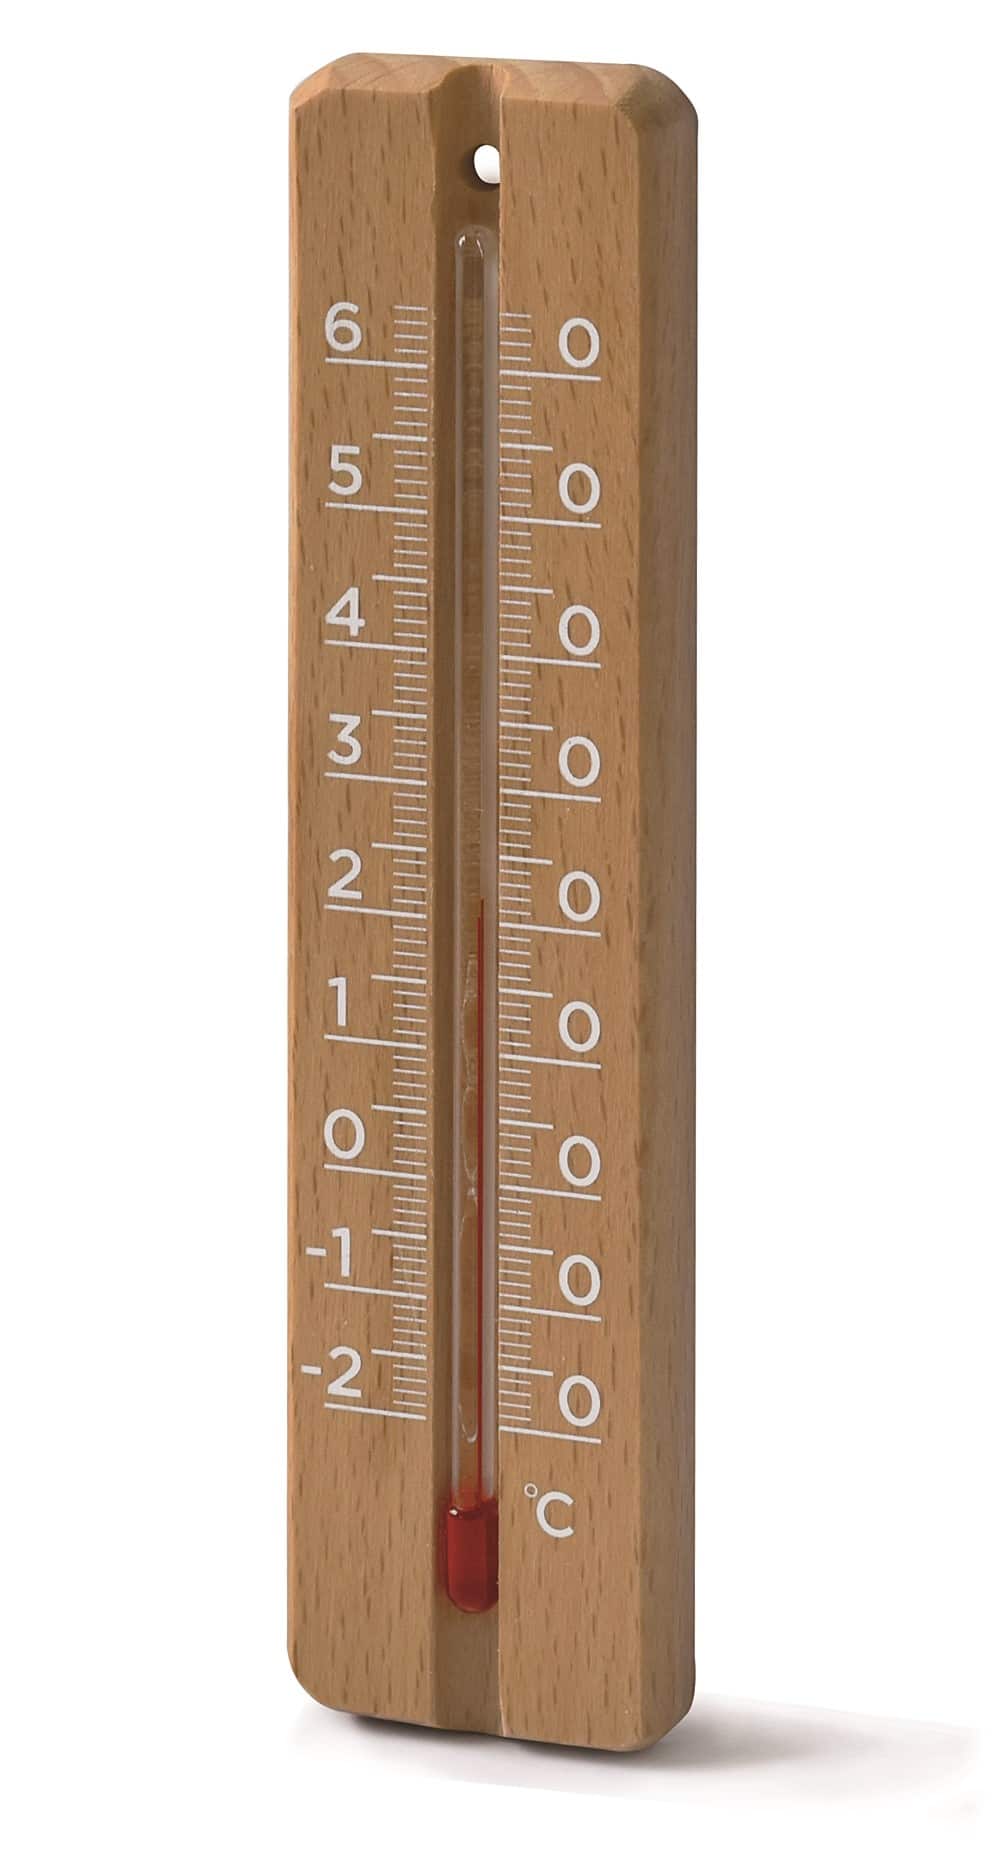 Thermometre / hygrometre interieur magnetique - rouge - otio - Mr.Bricolage